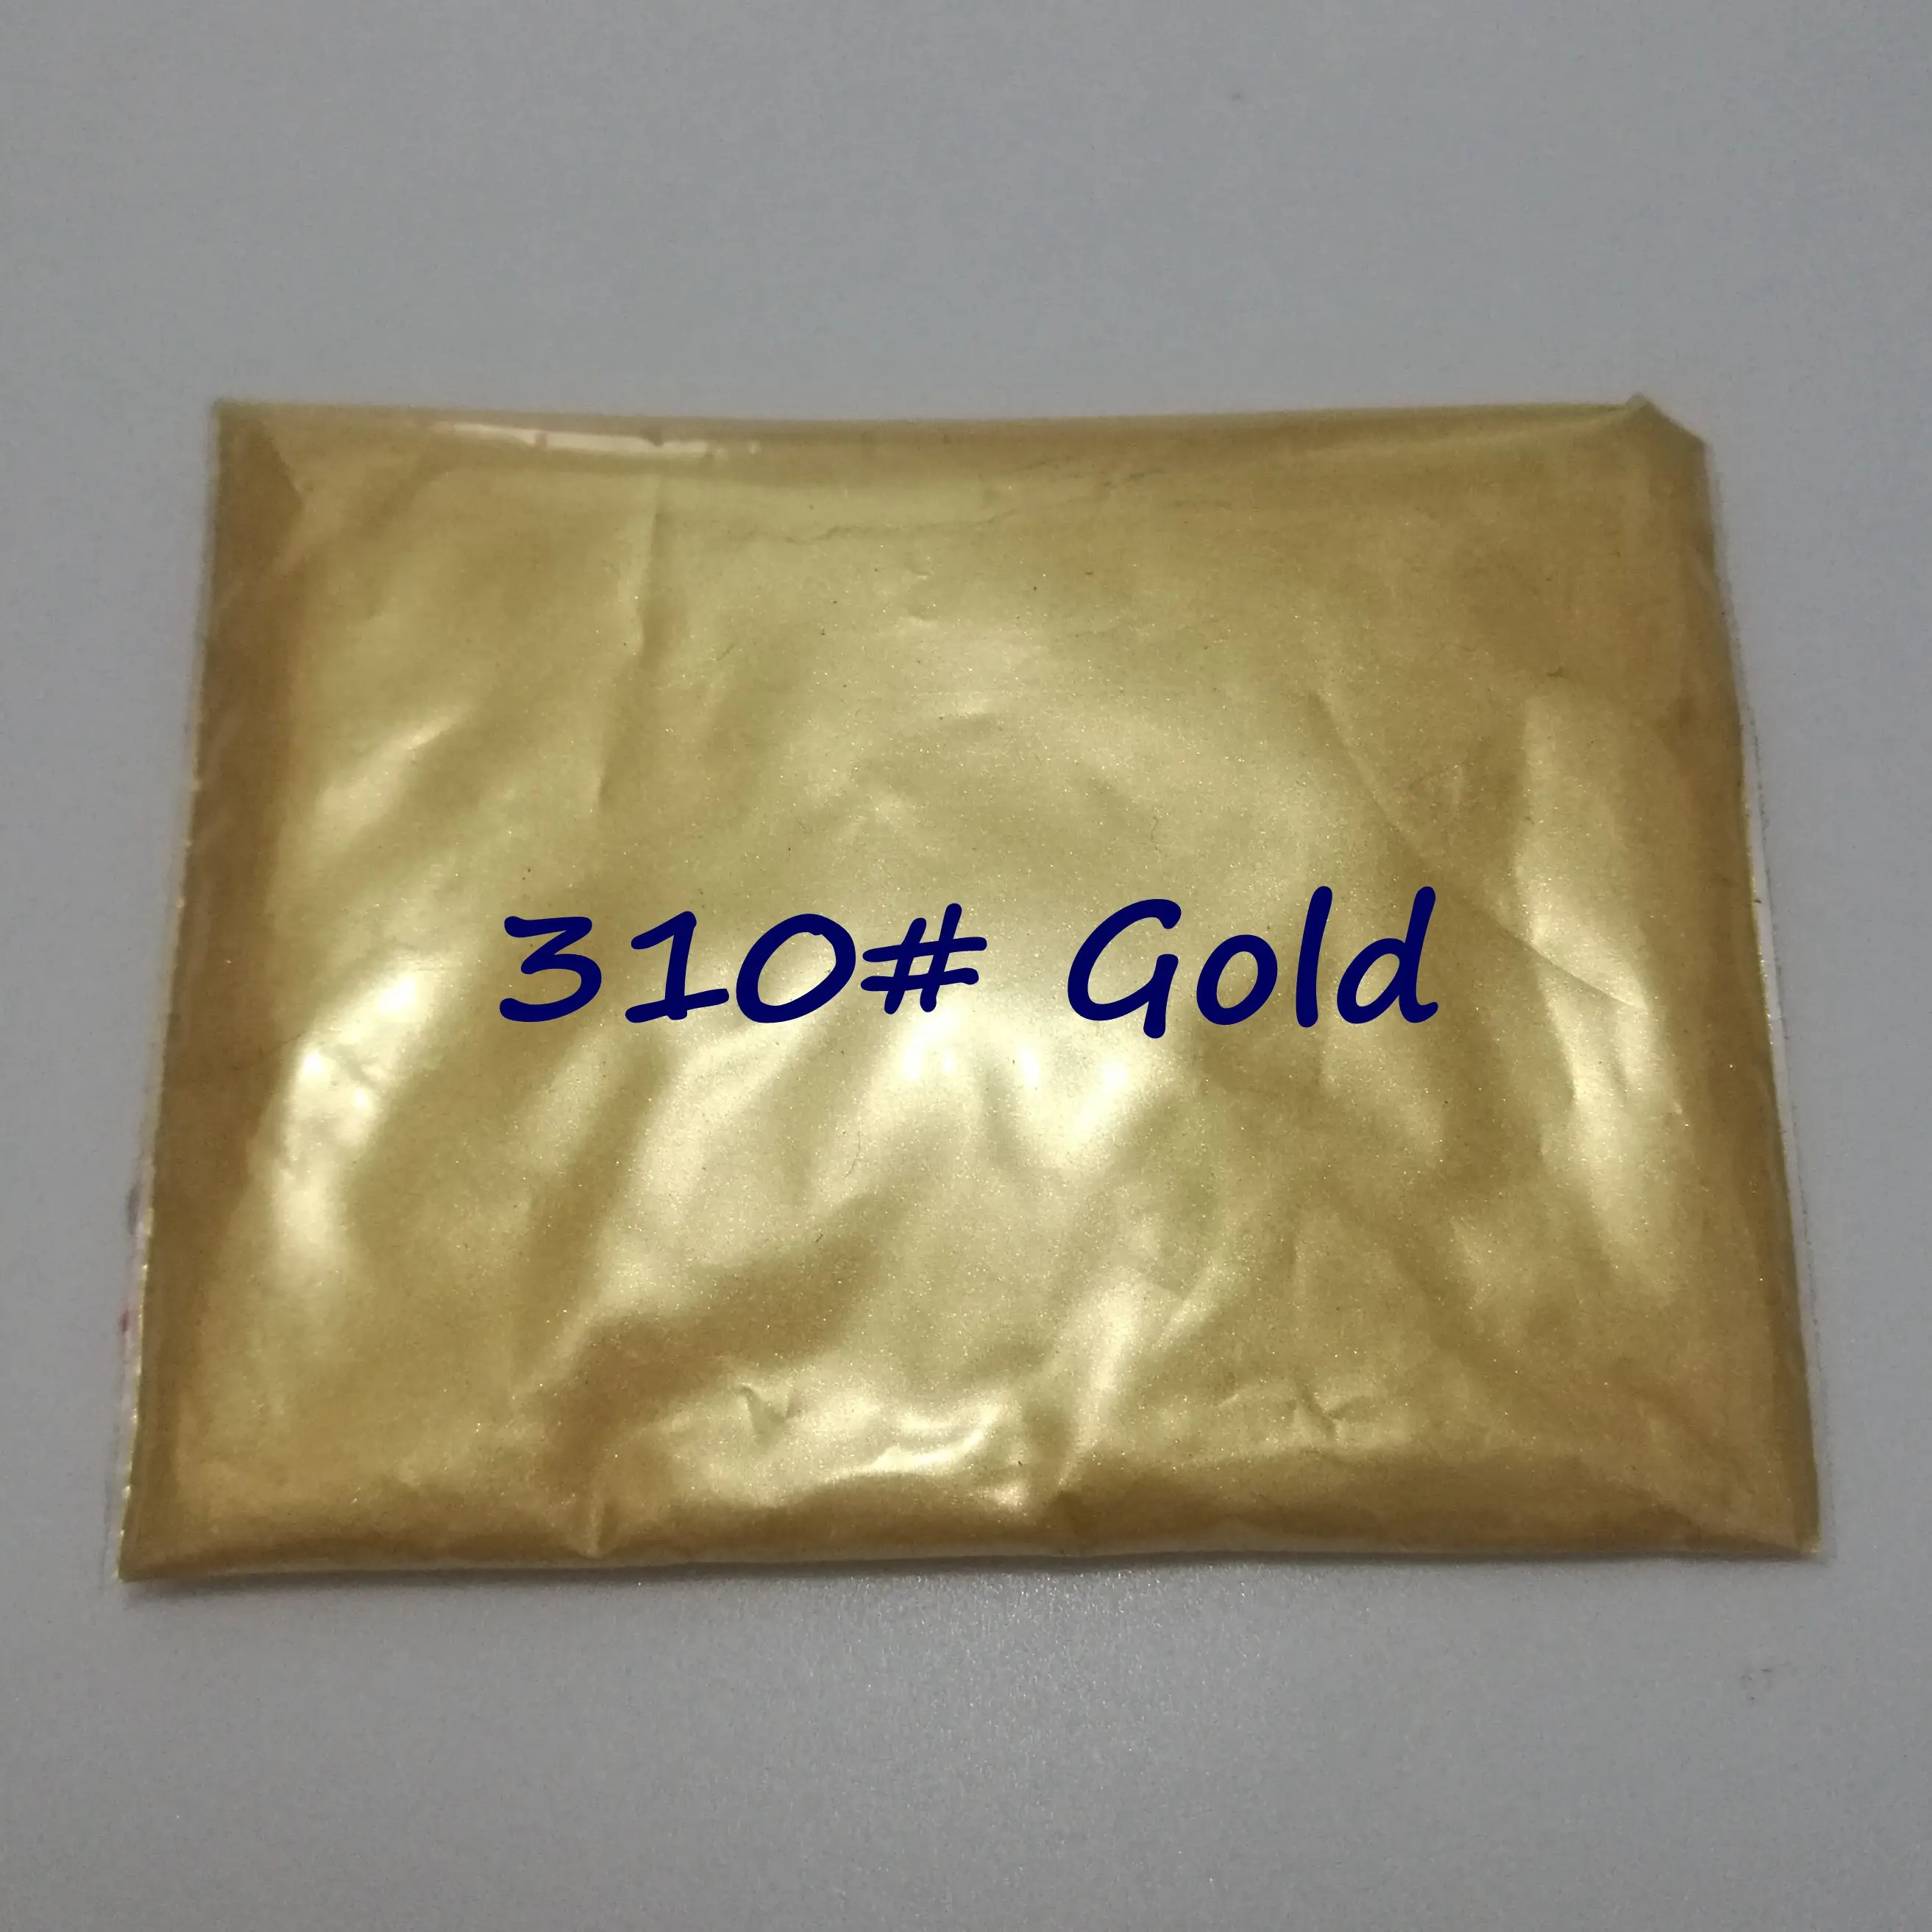 50 г 300 Золотой натуральный перламутровый слюдяной порошковый пигмент металлический краситель для ногтей Косметический лак, изготовление мыла - Цвет: 310 Gold